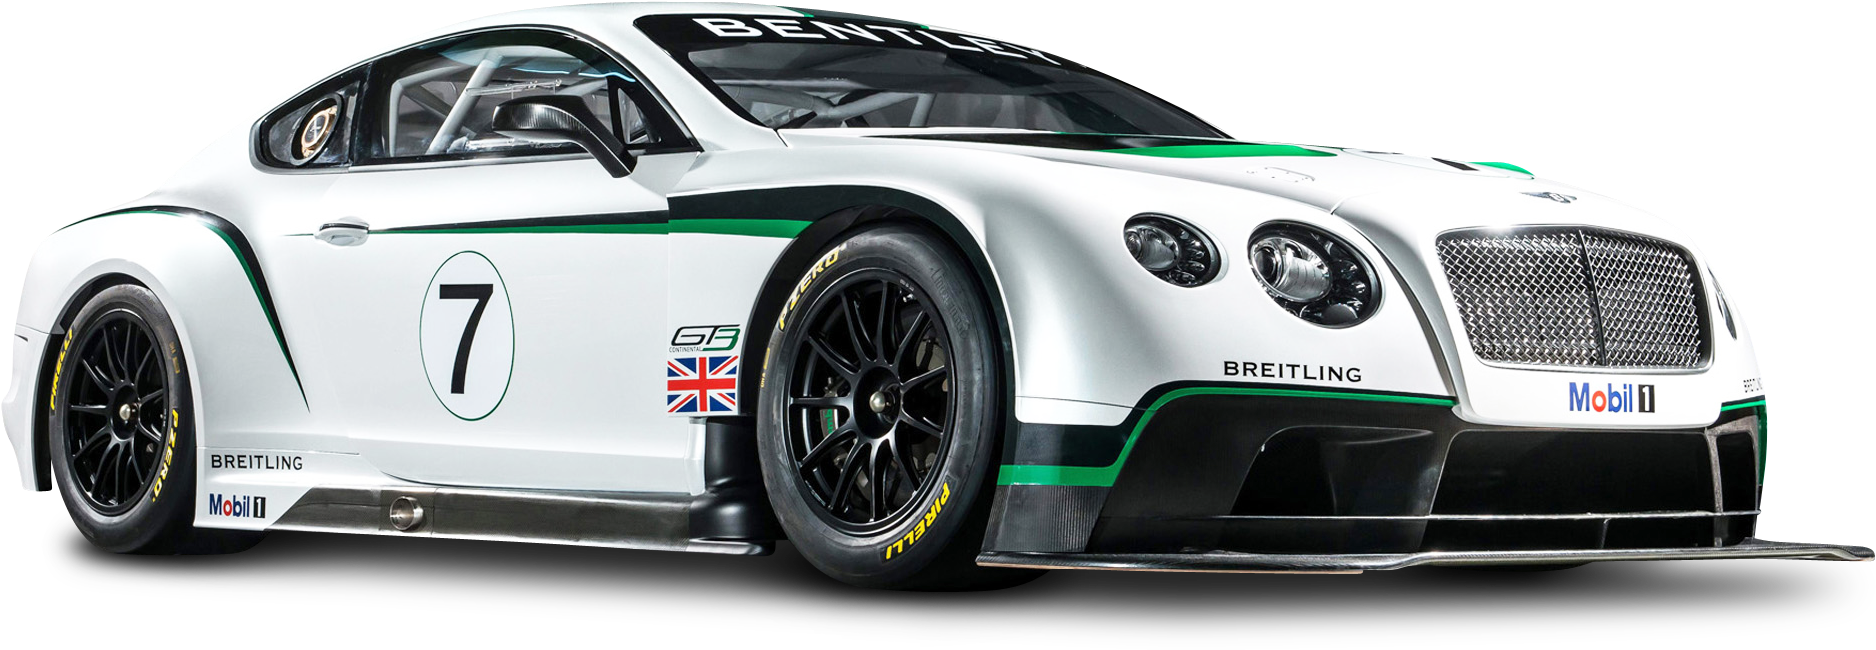 Bentley Race Car Number7